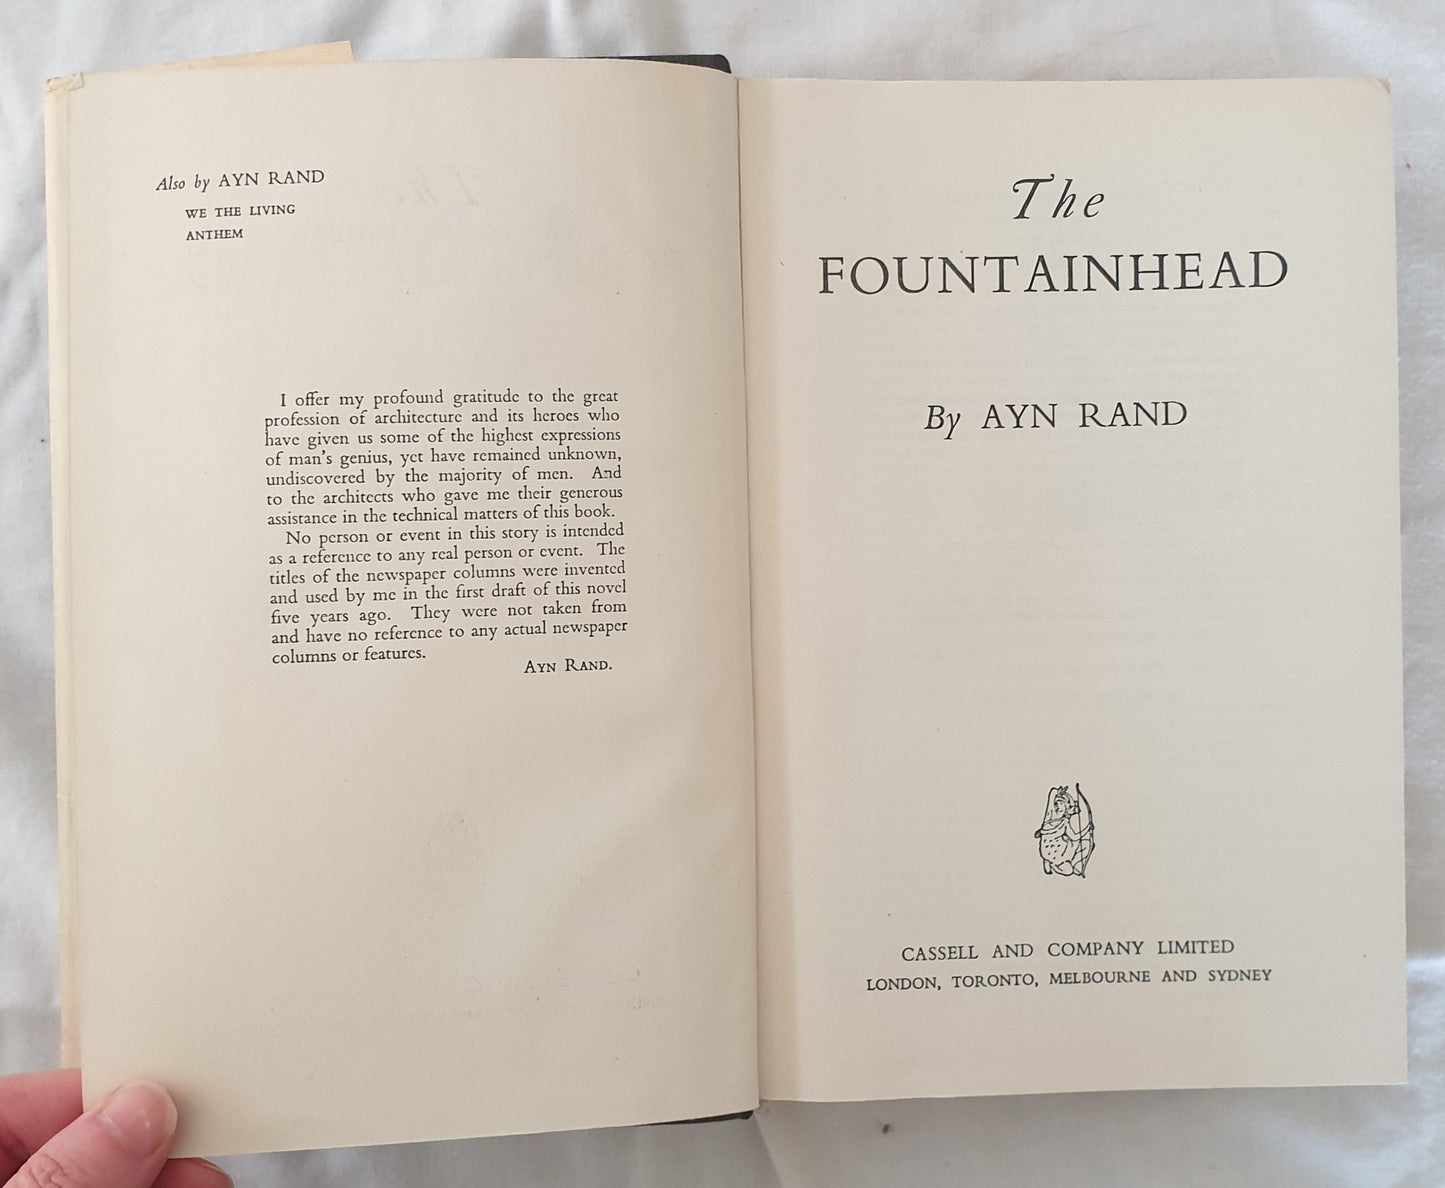 The Fountainhead by Ayn Rand